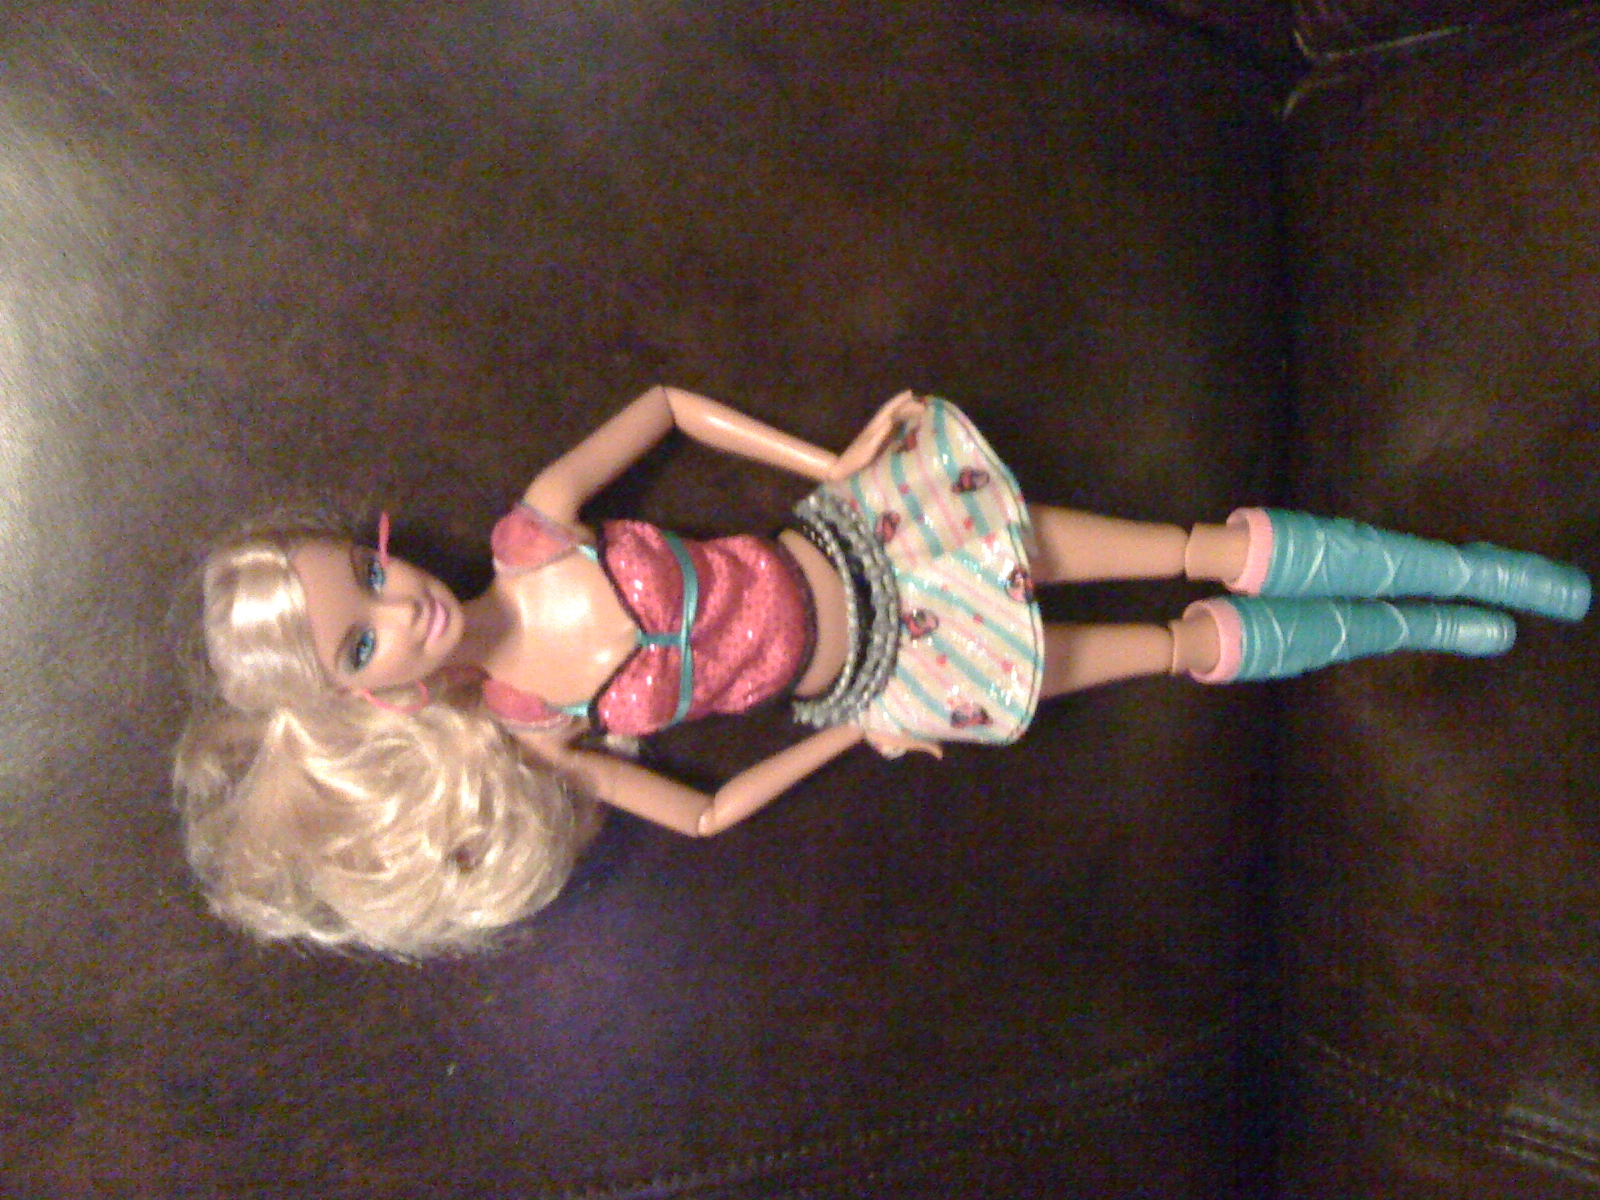 Doll stripper barbie stripper barbie